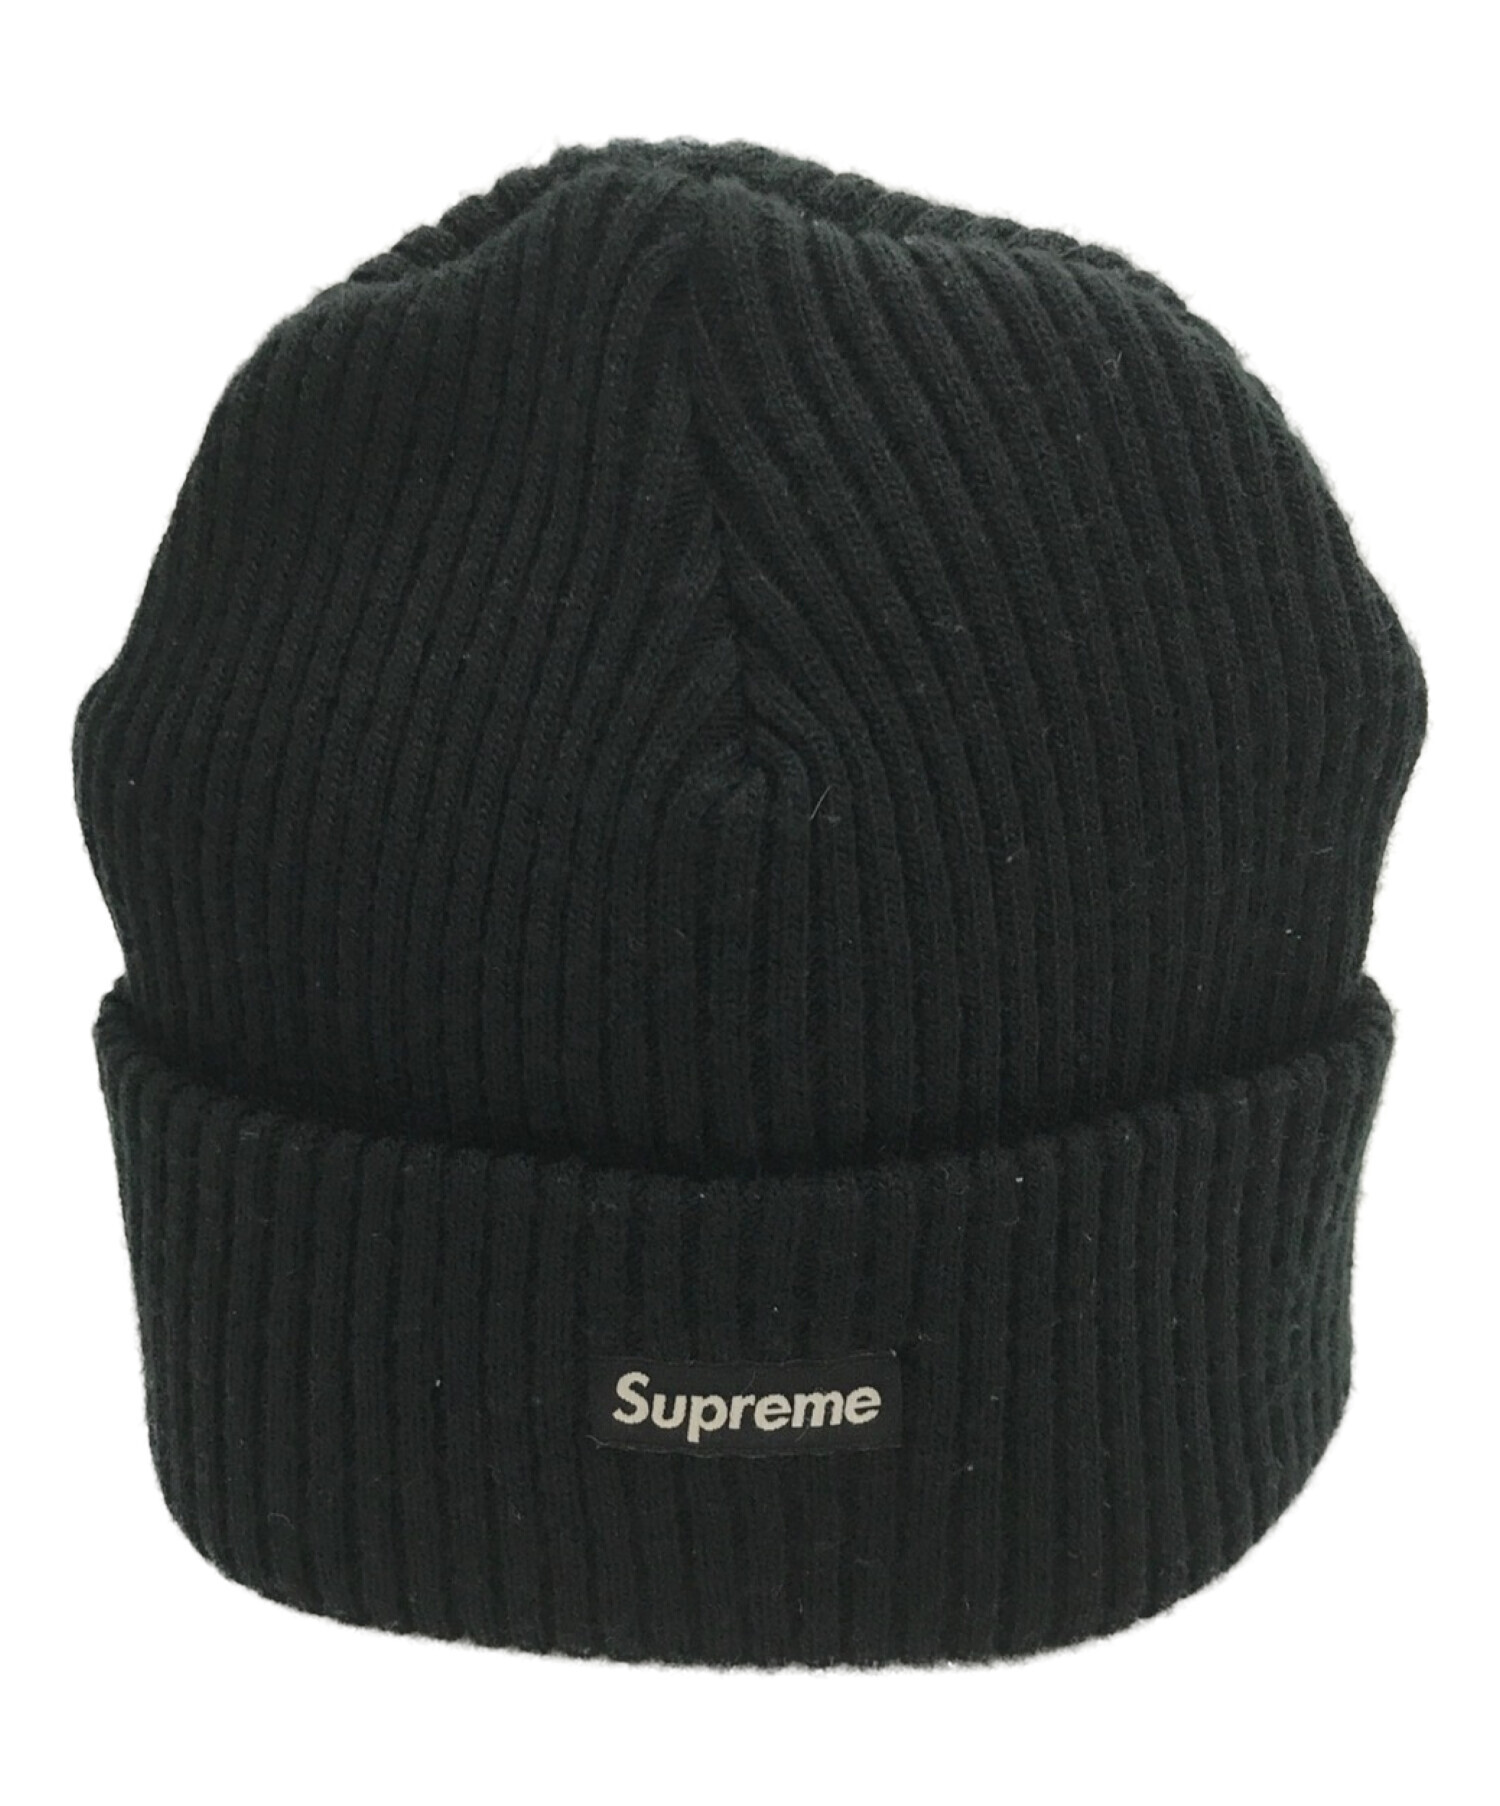 Supreme シュプリーム ニット帽 ニットキャップ ブラック